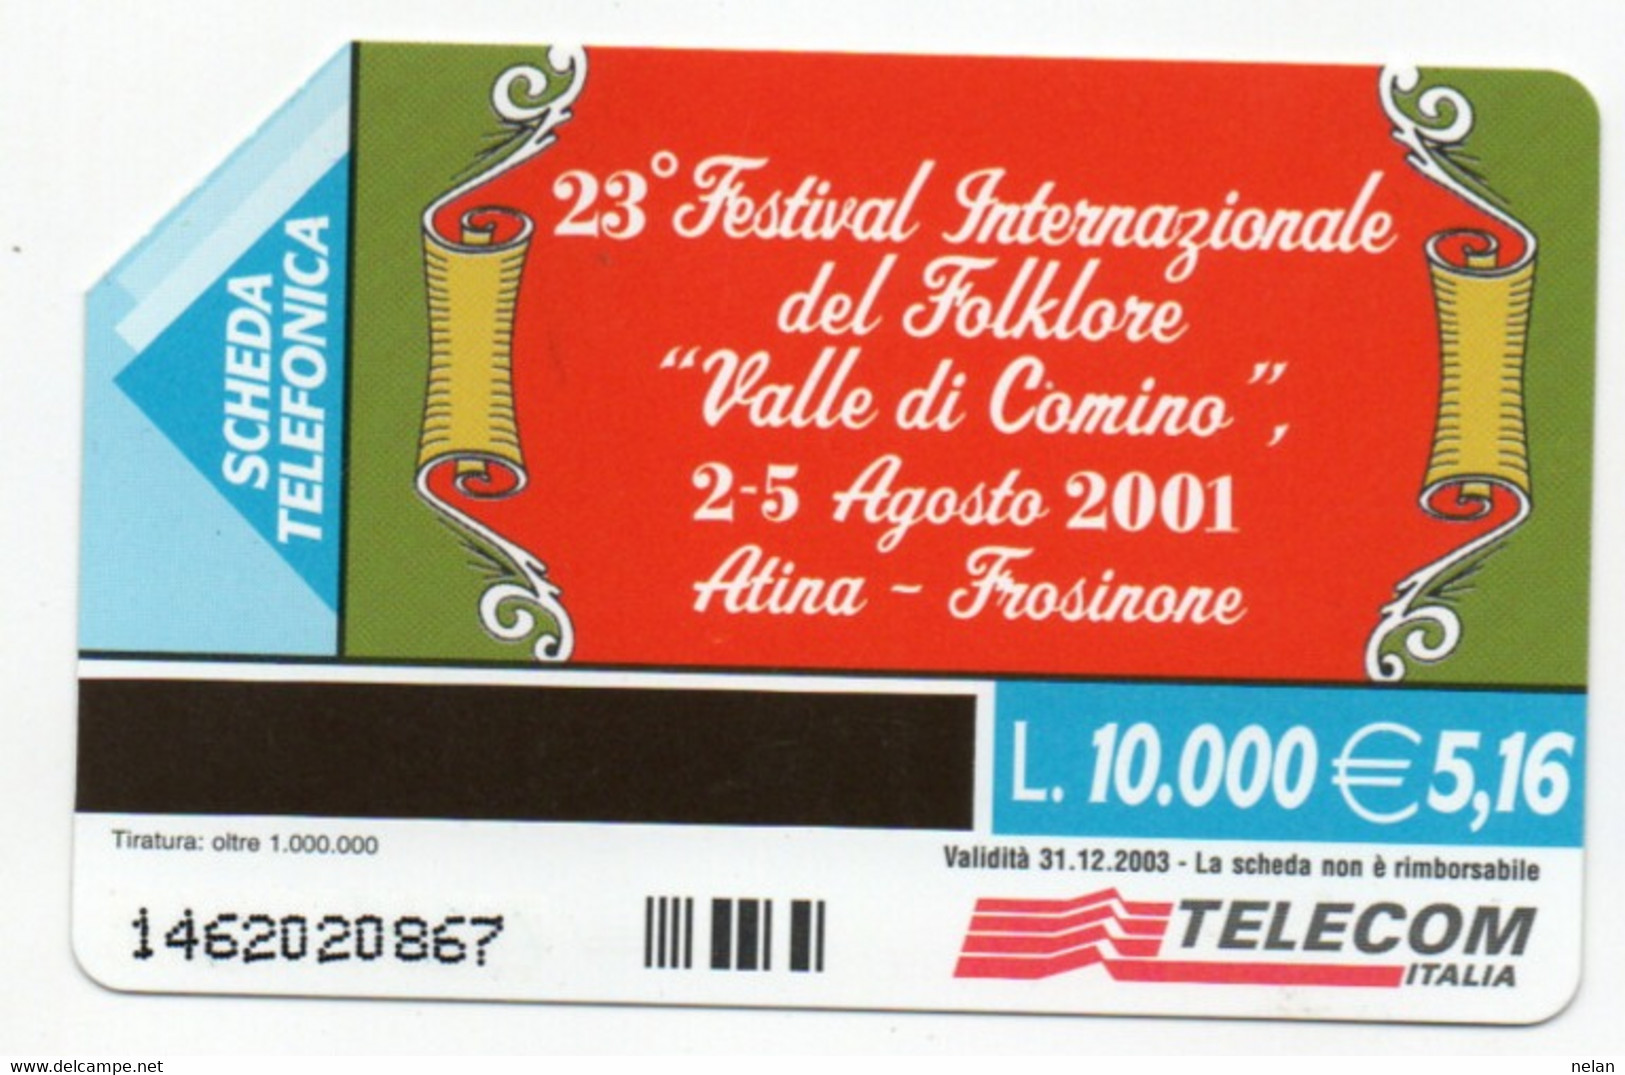 ITALIA - TELECOM - 23 FESTIVAL INTERNAZIONALE DEL FOLKLORE VALLE DI COMINO 2001 - ATINA - FROSINONE - Cultura